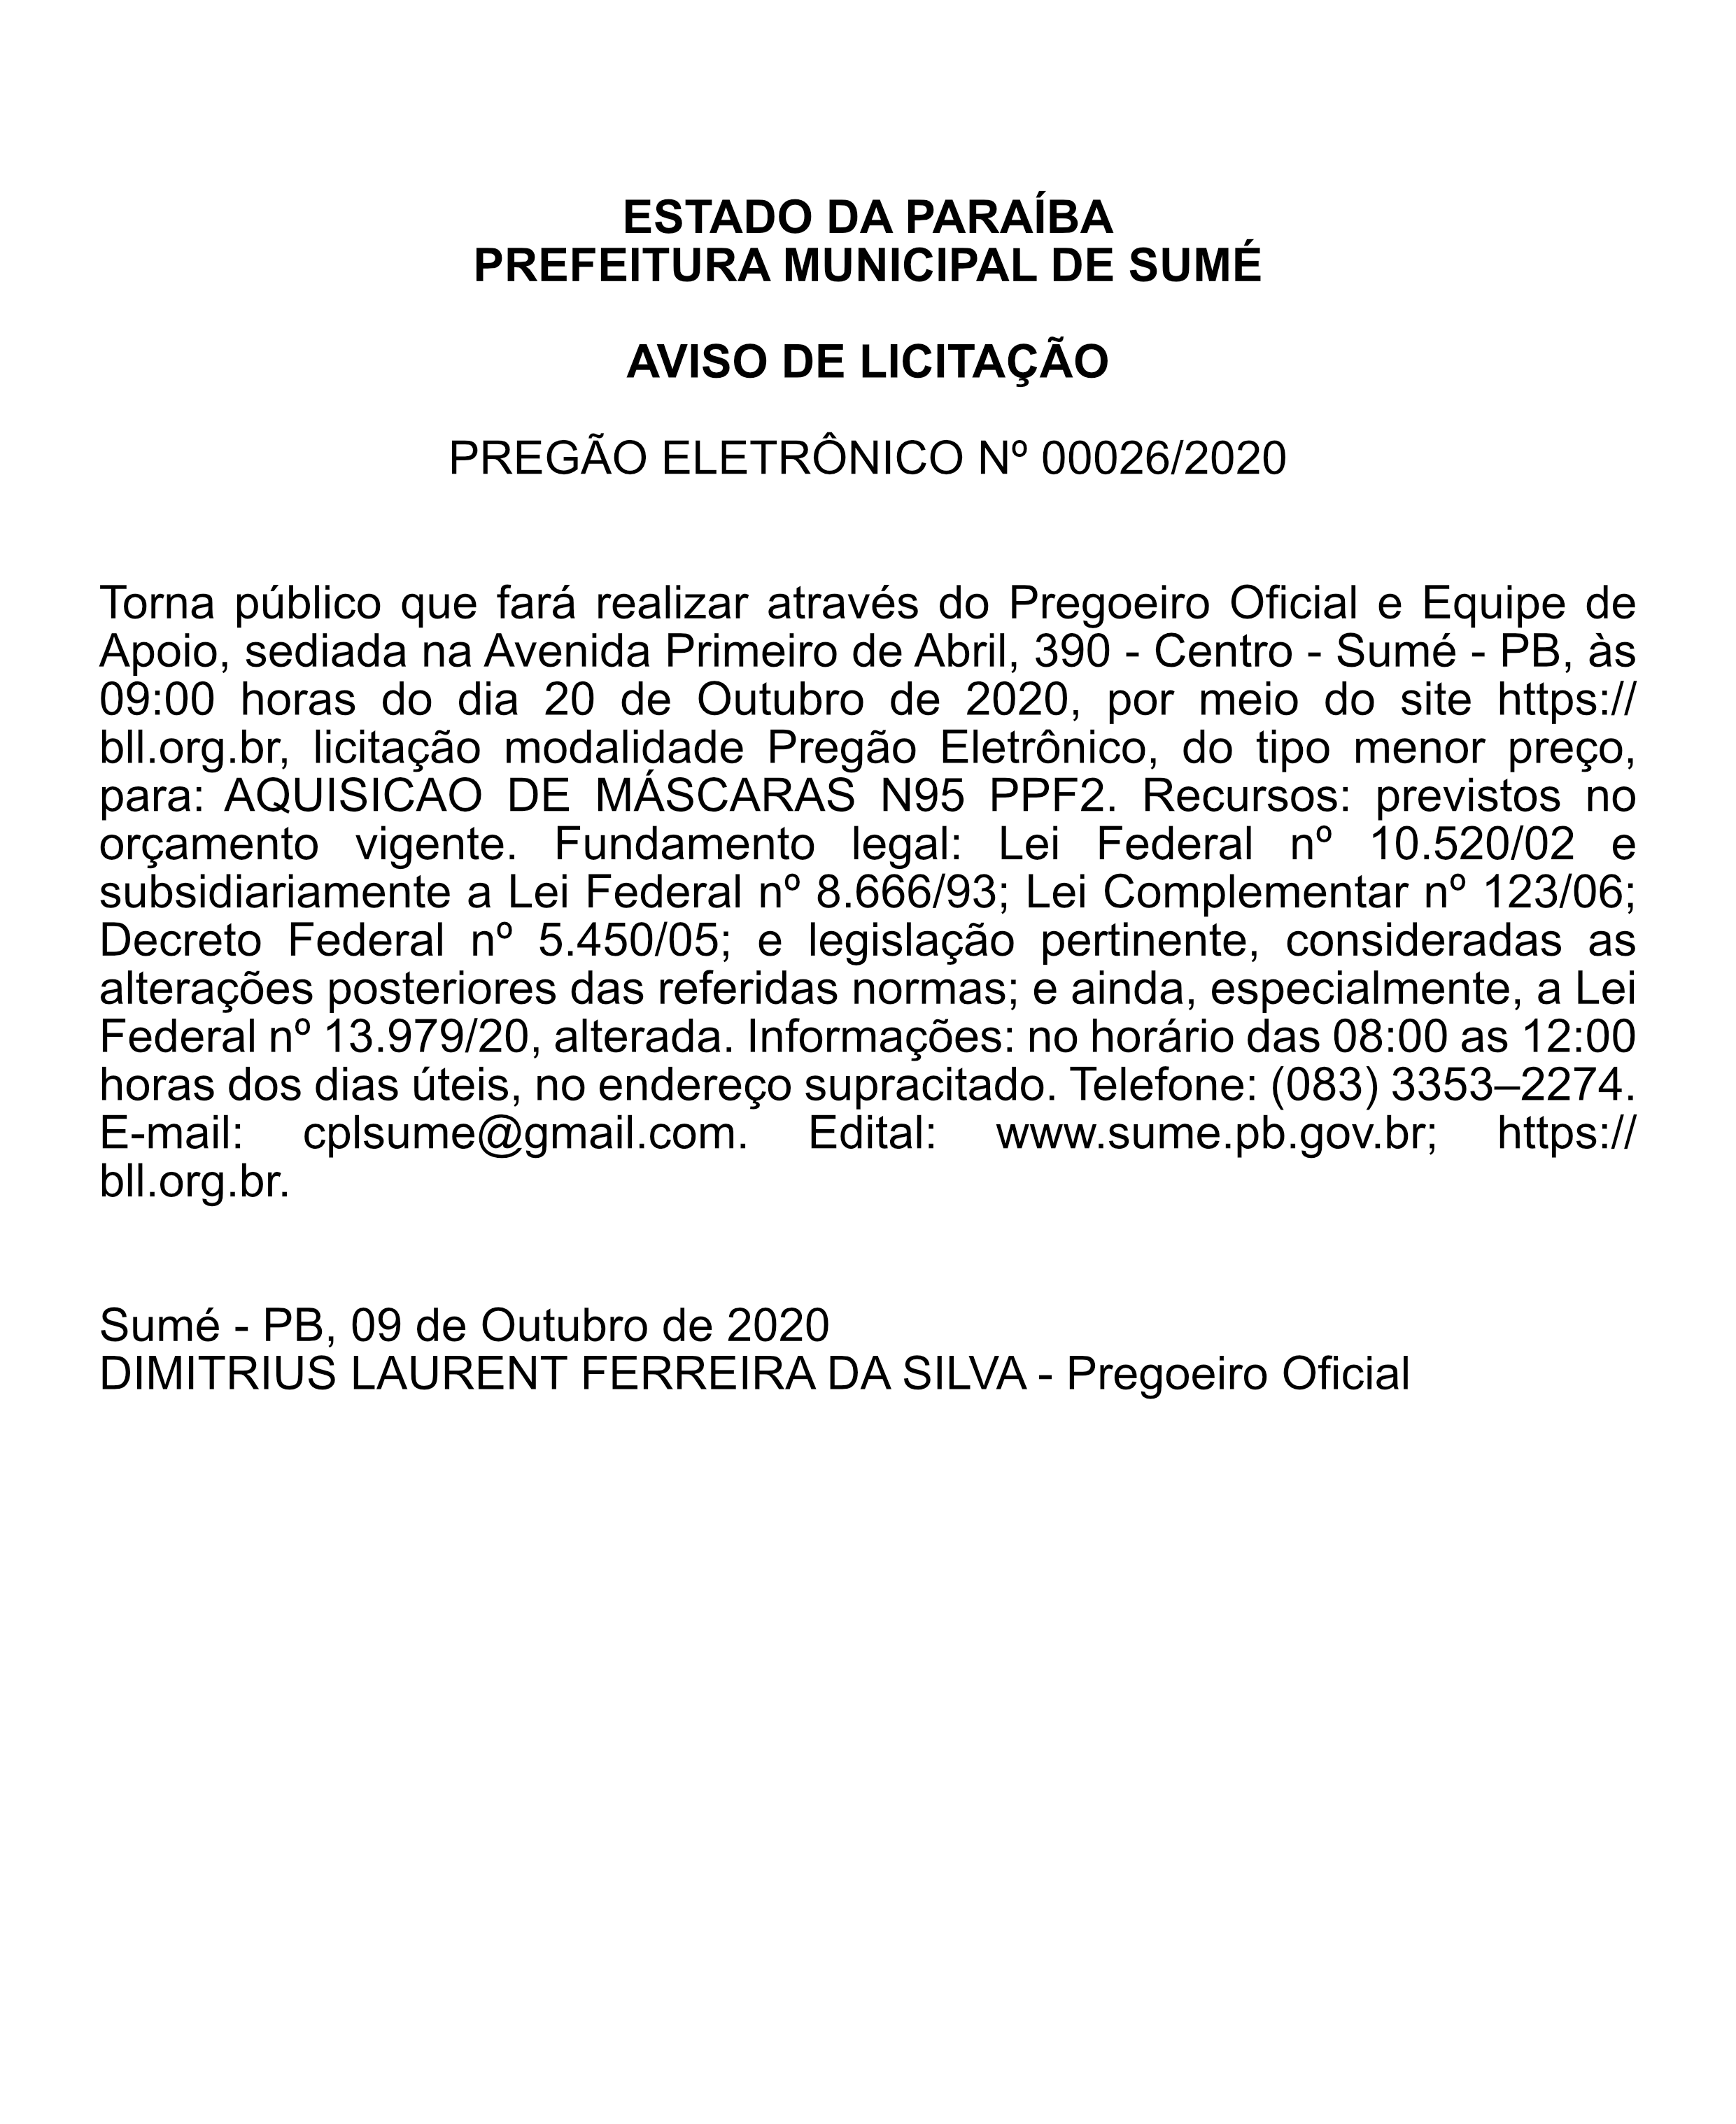 PREFEITURA MUNICIPAL DE SUMÉ – AVISO DE LICITAÇÃO – PREGÃO ELETRÔNICO Nº 00026/2020